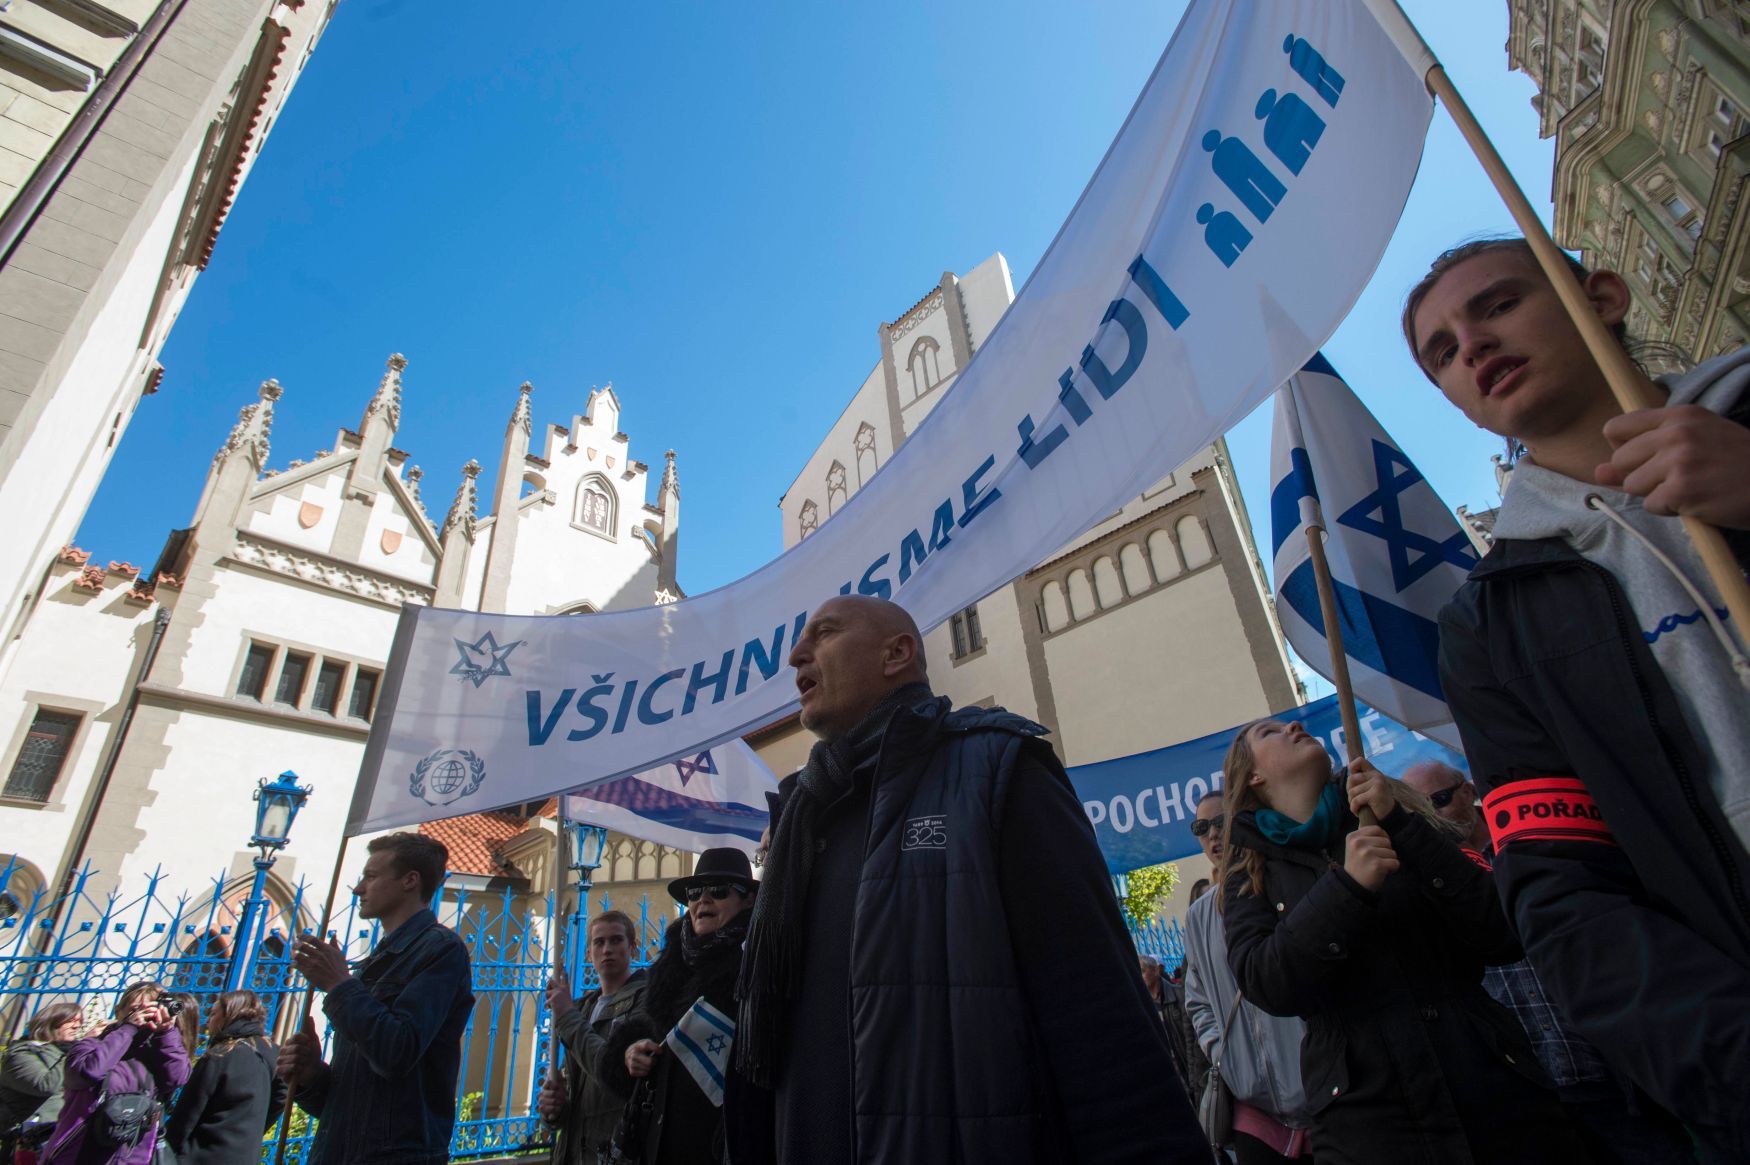 Pochod proti antisemitismu